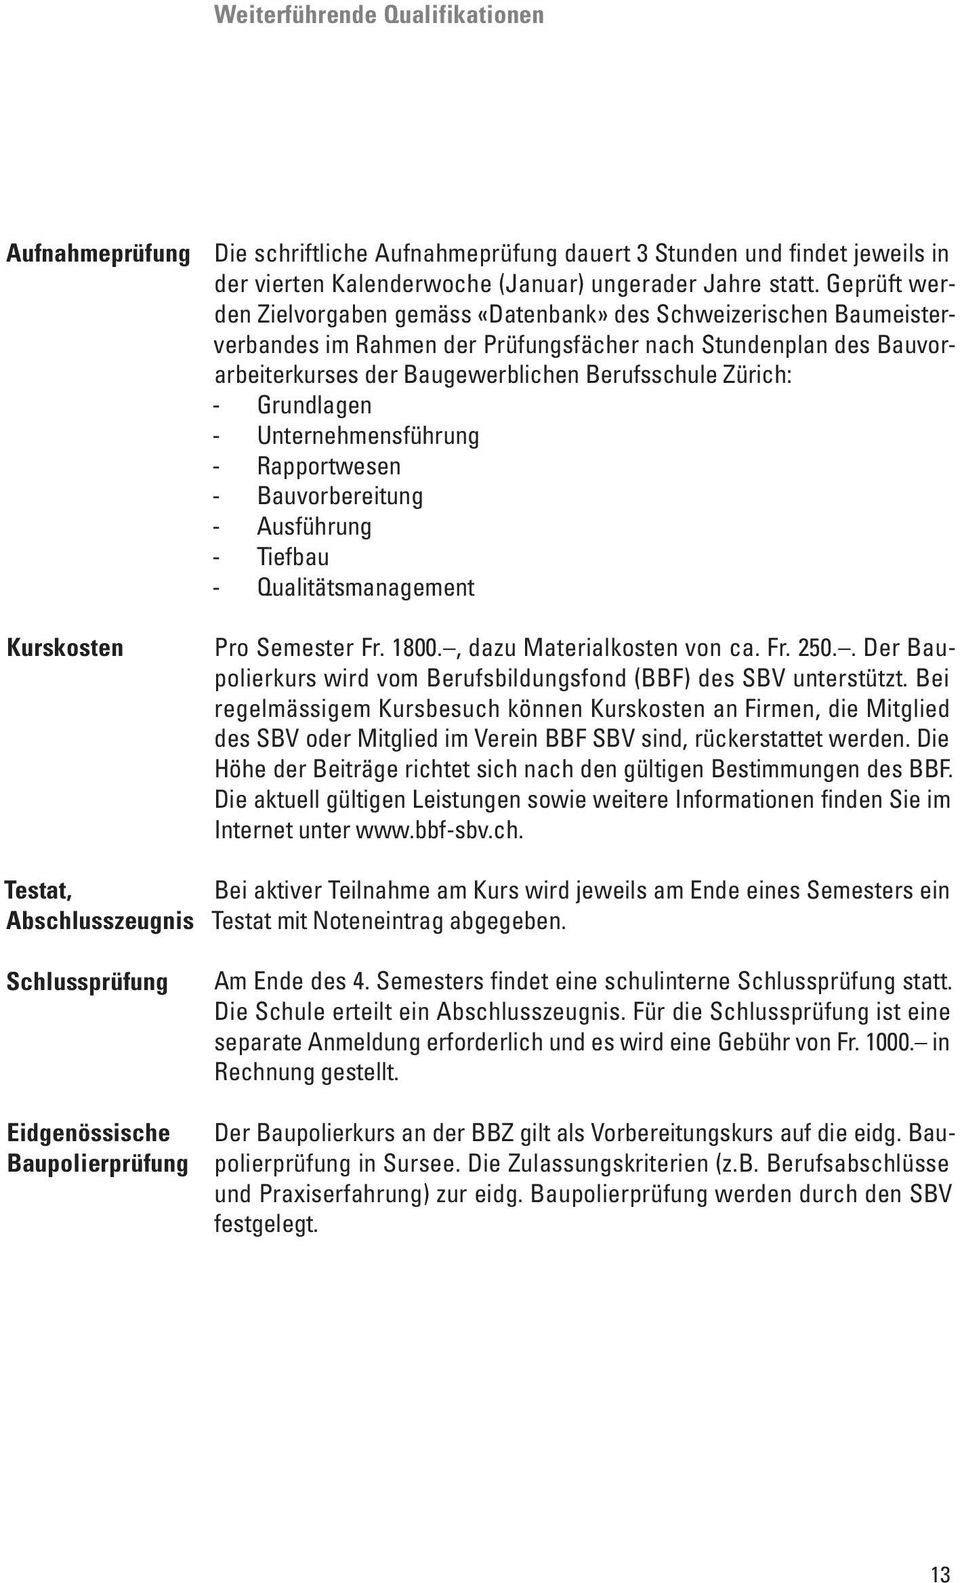 Zürich: - Grundlagen - Unternehmensführung - Rapportwesen - Bauvorbereitung - Ausführung - Tiefbau - Qualitätsmanagement Pro Semester Fr. 1800., dazu Materialkosten von ca. Fr. 250.